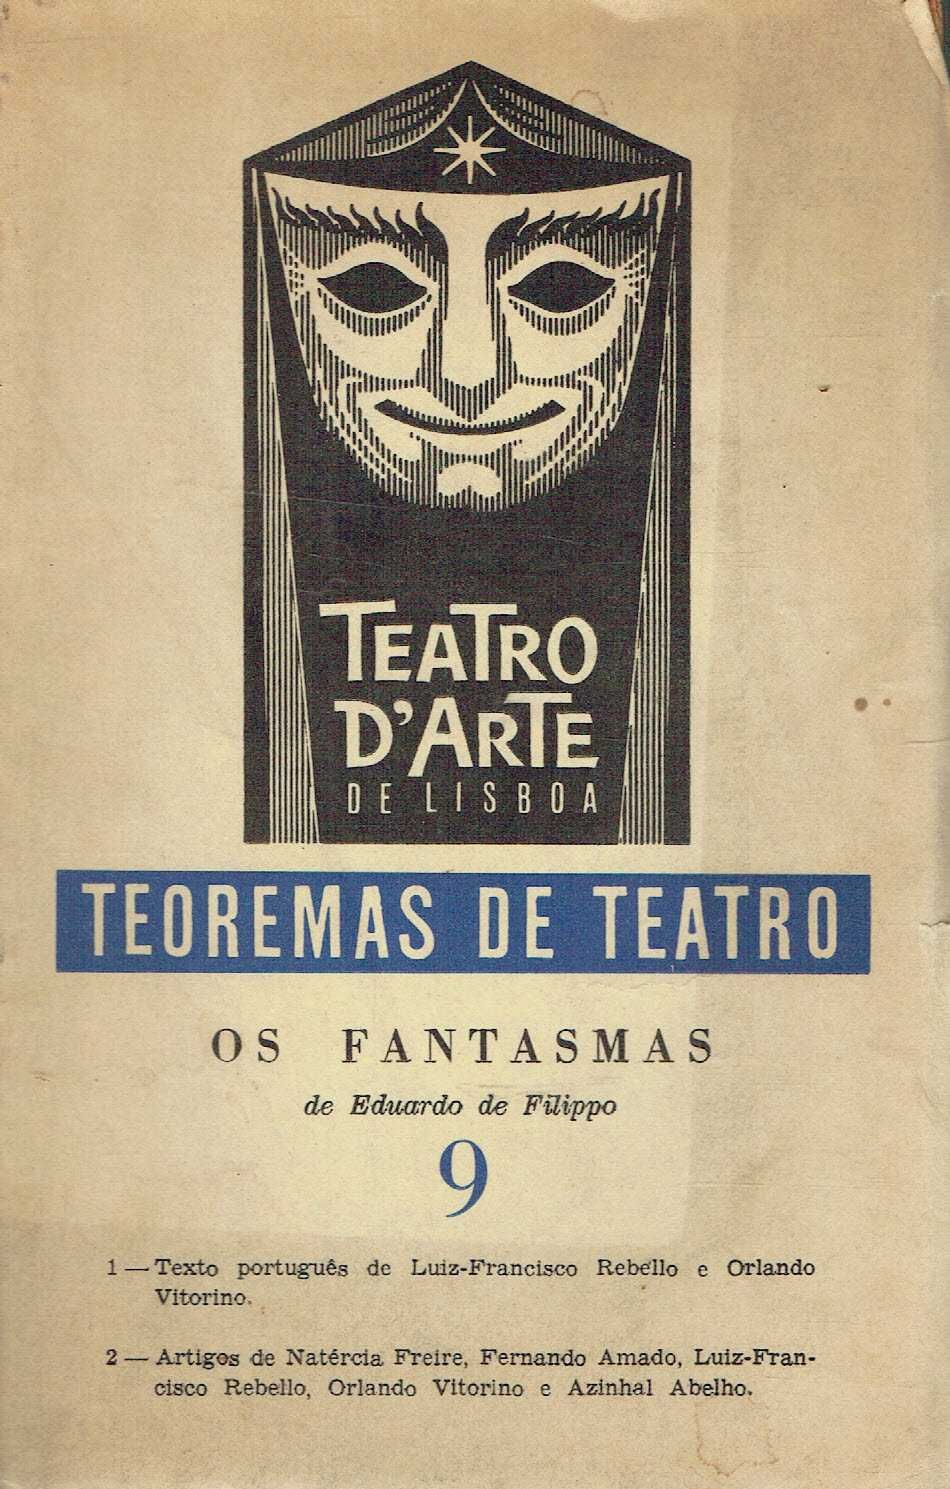 14352

Coleção Teatro d'arte de Lisboa